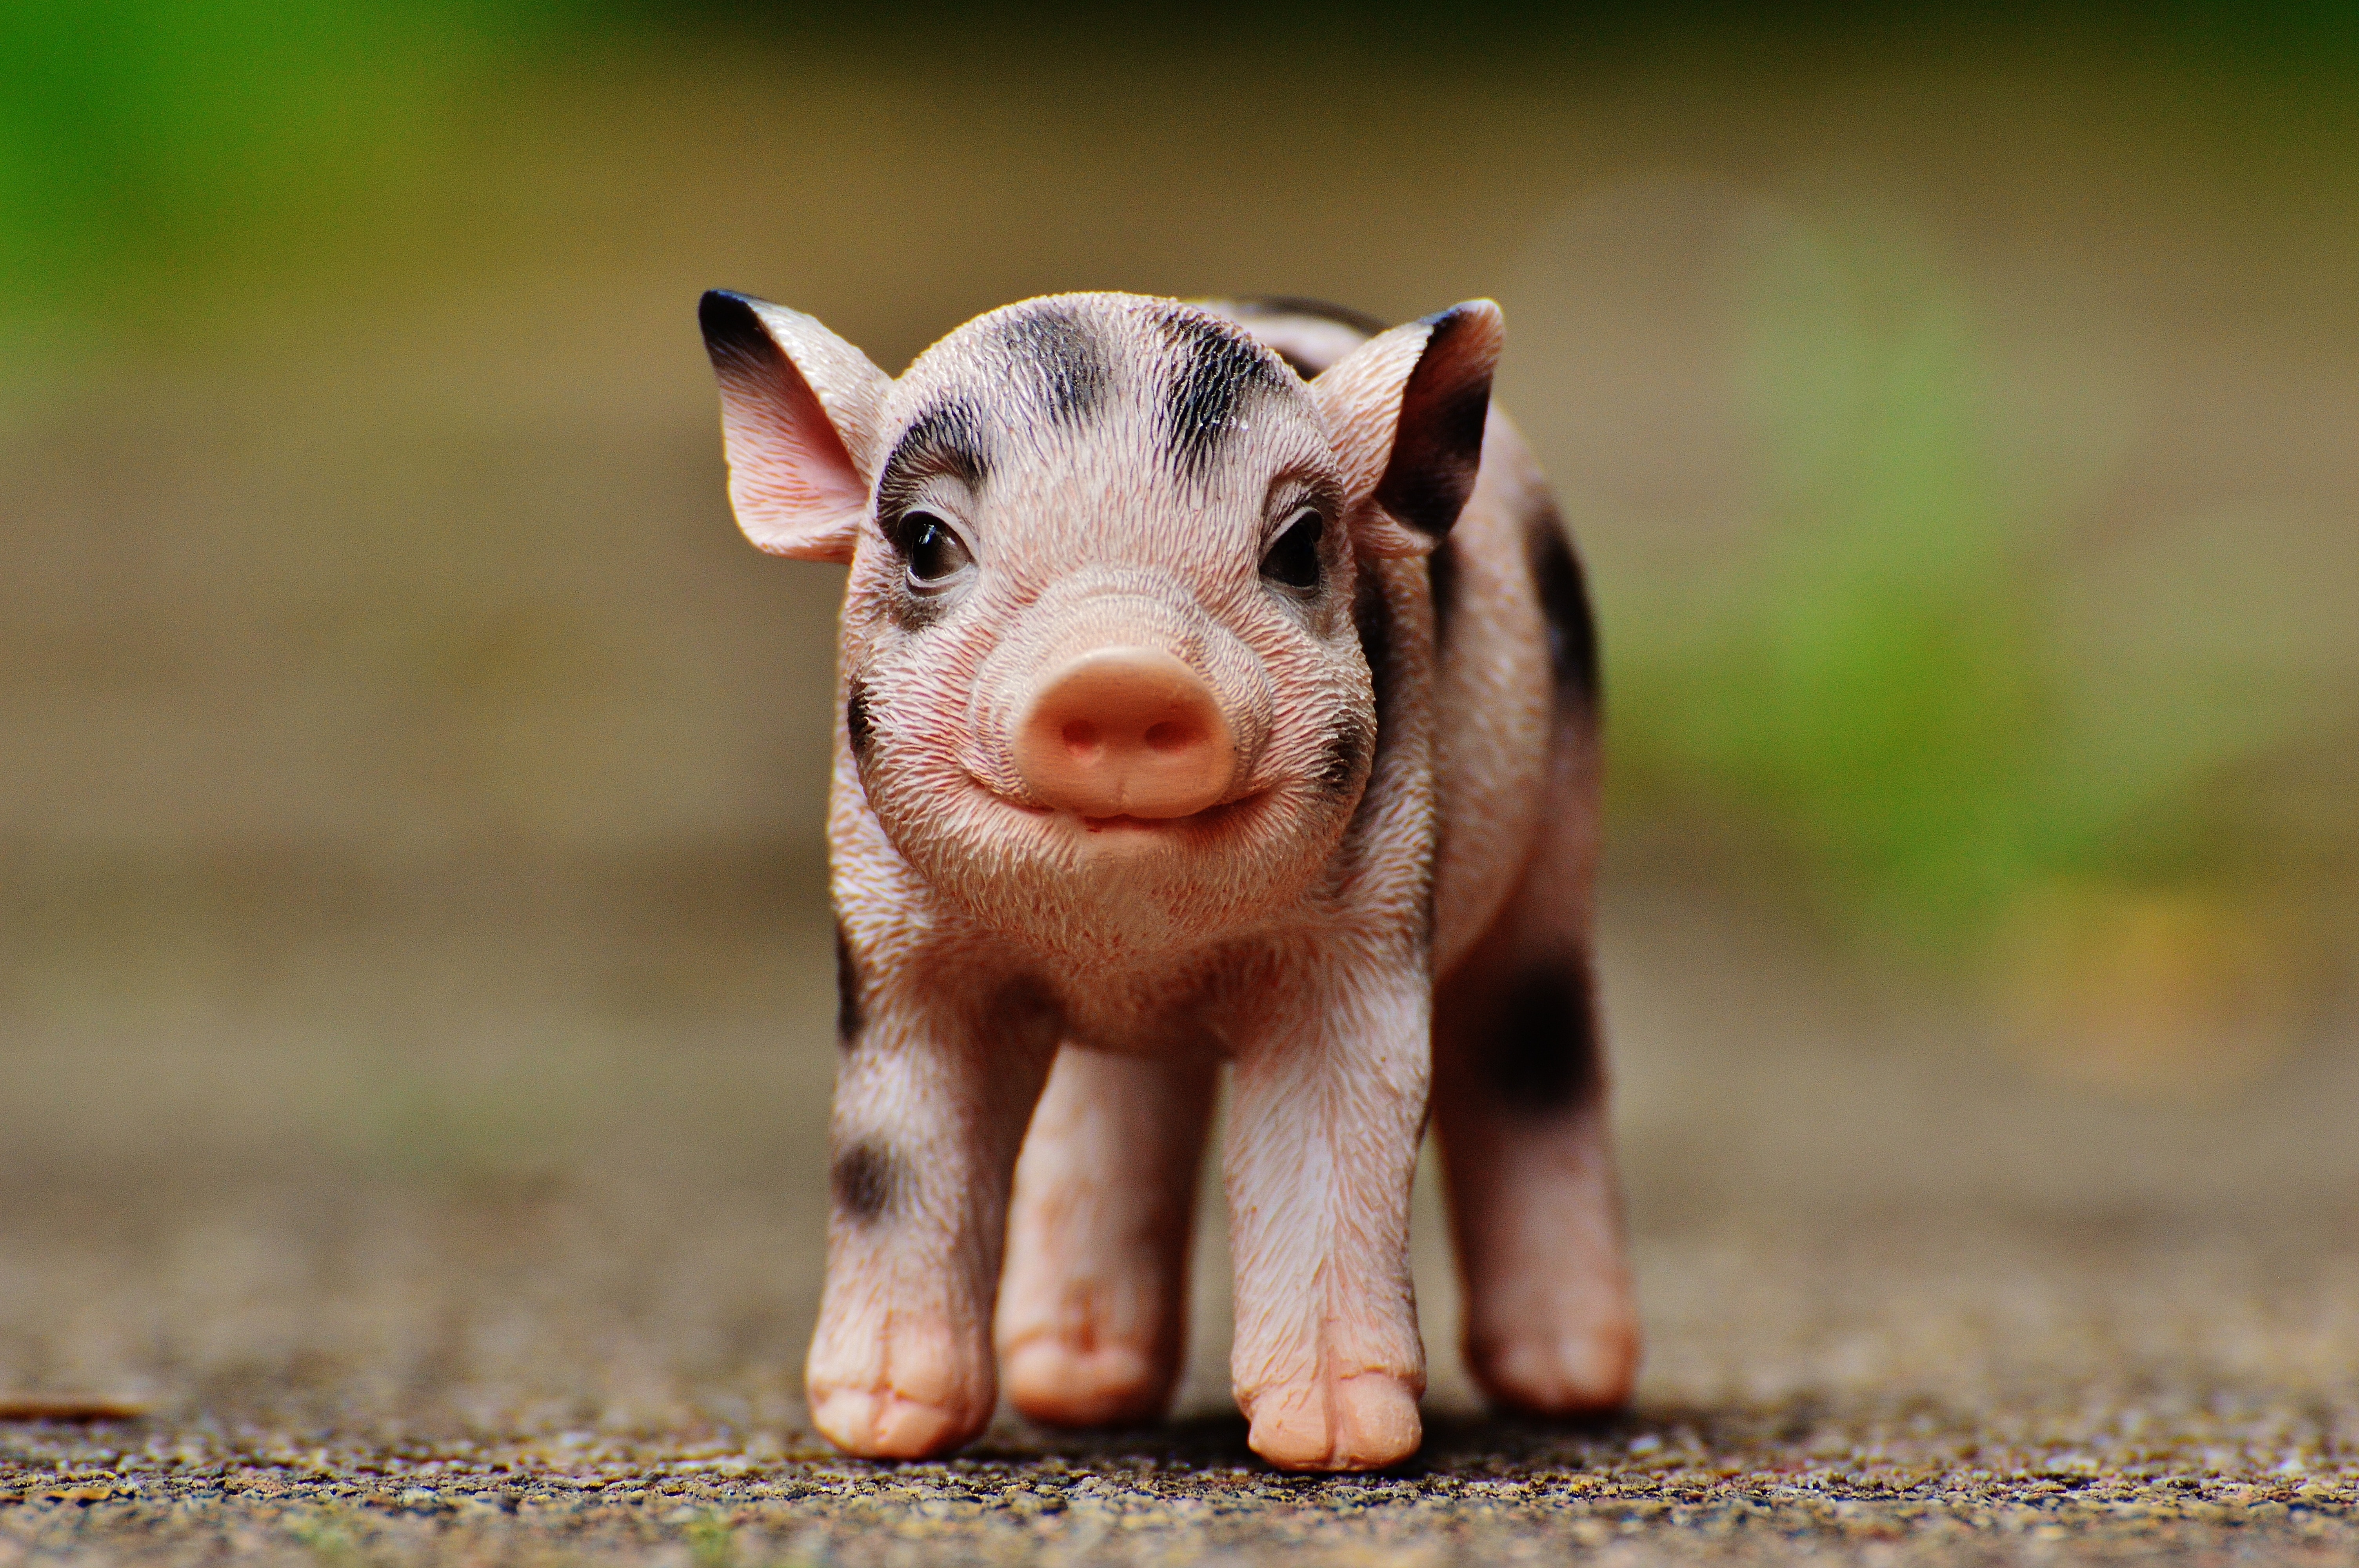 Animal, Deco, Sweet, Piglet, Cute, Fig, pig, one animal